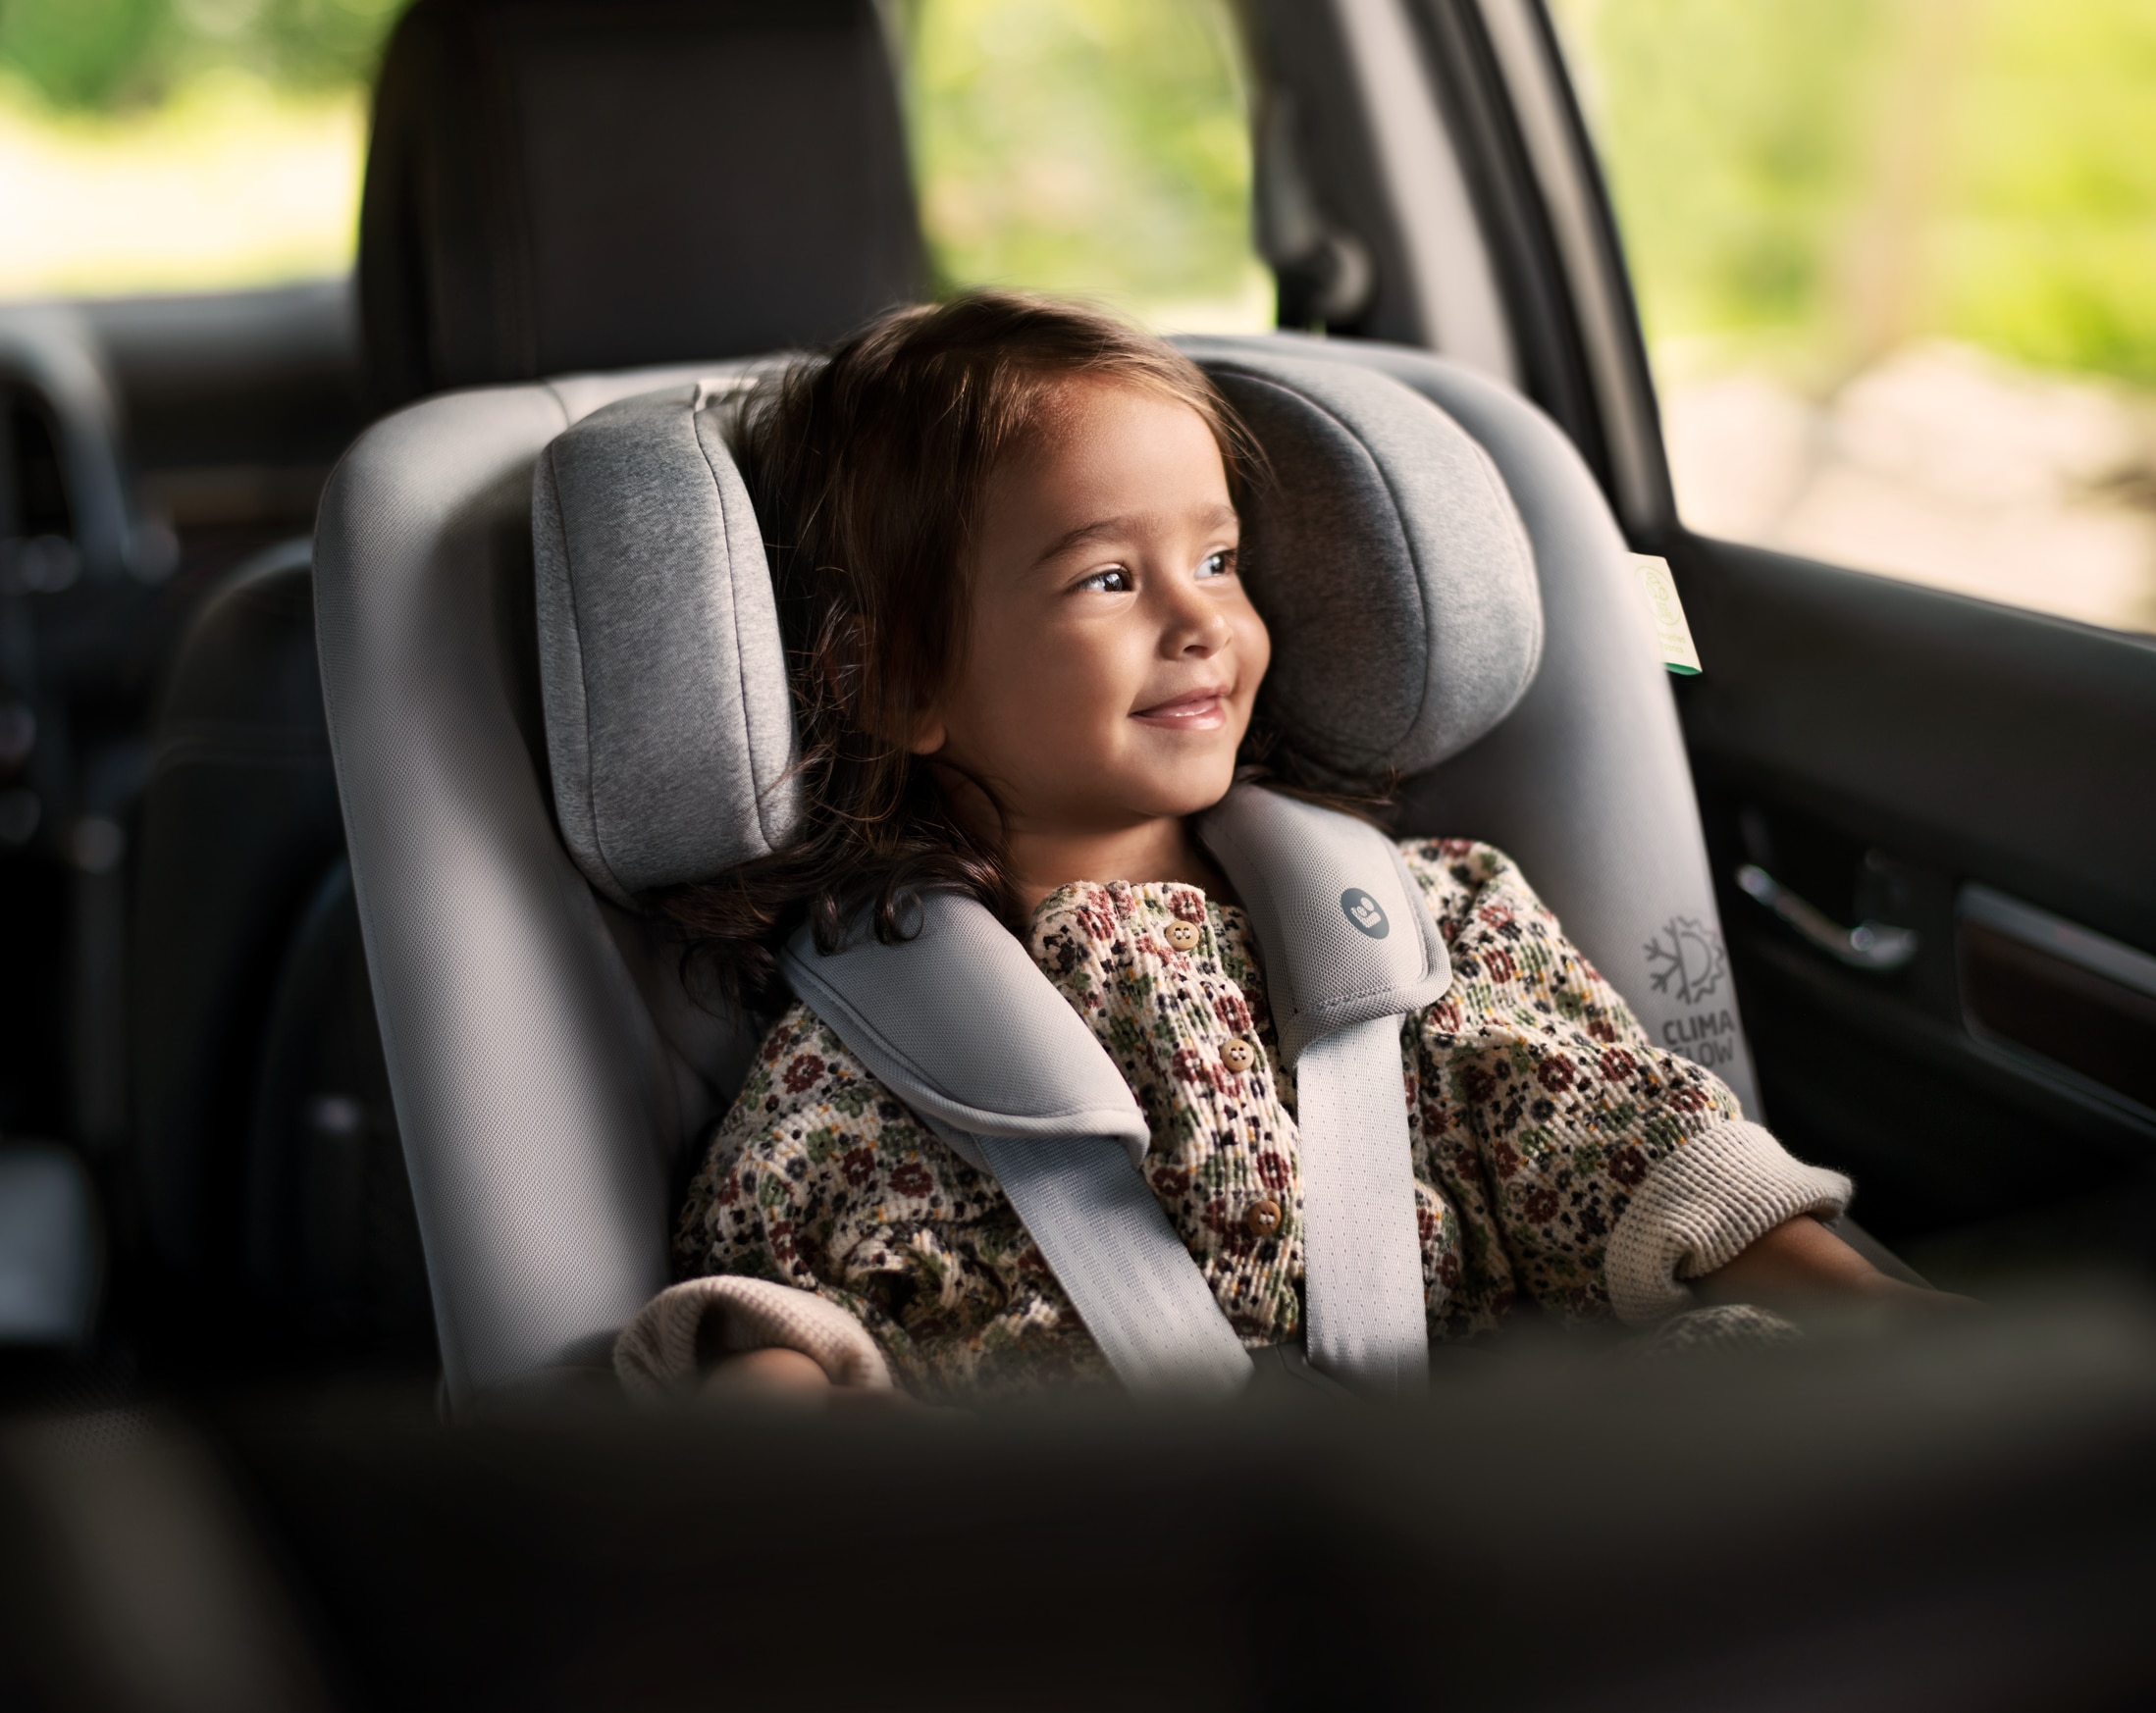 Le premier baby-siège auto avec airbags intégrés - Science et vie